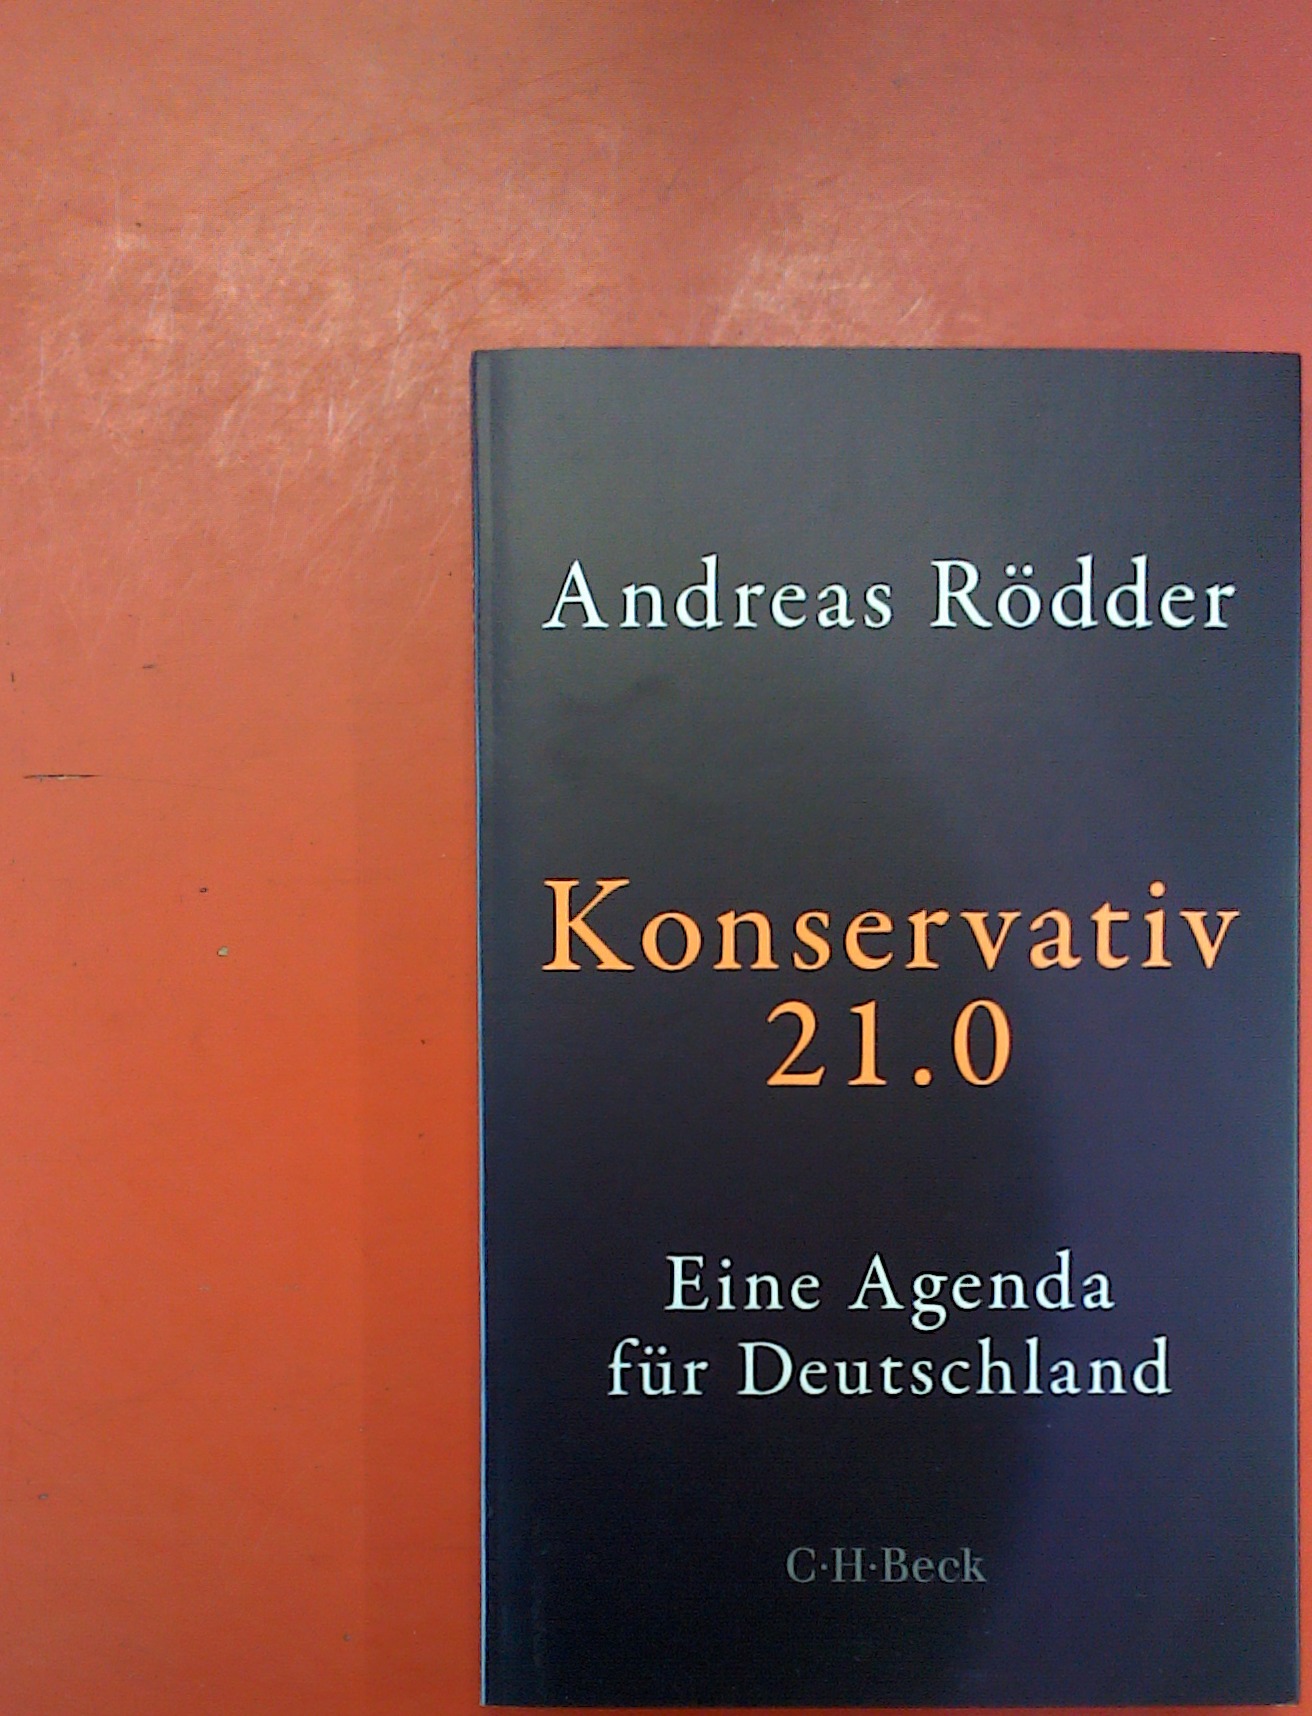 Konservativ 21.0. Eine Agenda für Deutschland - Andreas Rödder